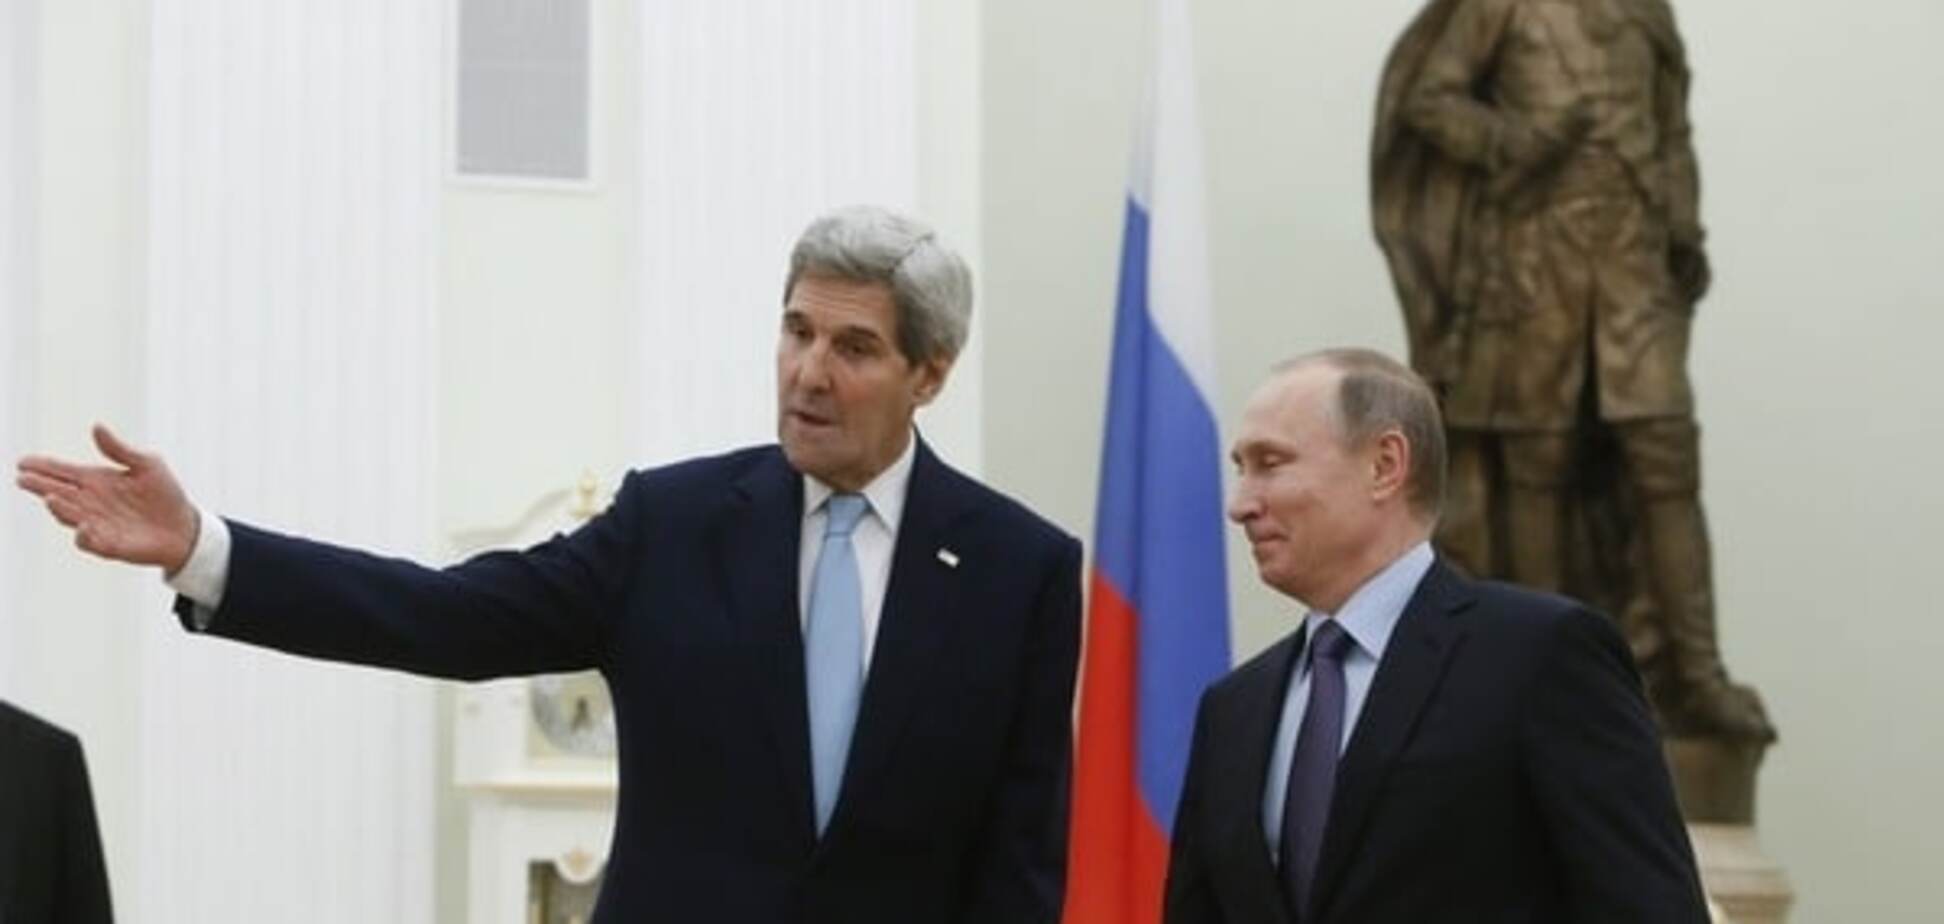 Политолог объяснил неудачную 'шутку' Путина в адрес Керри